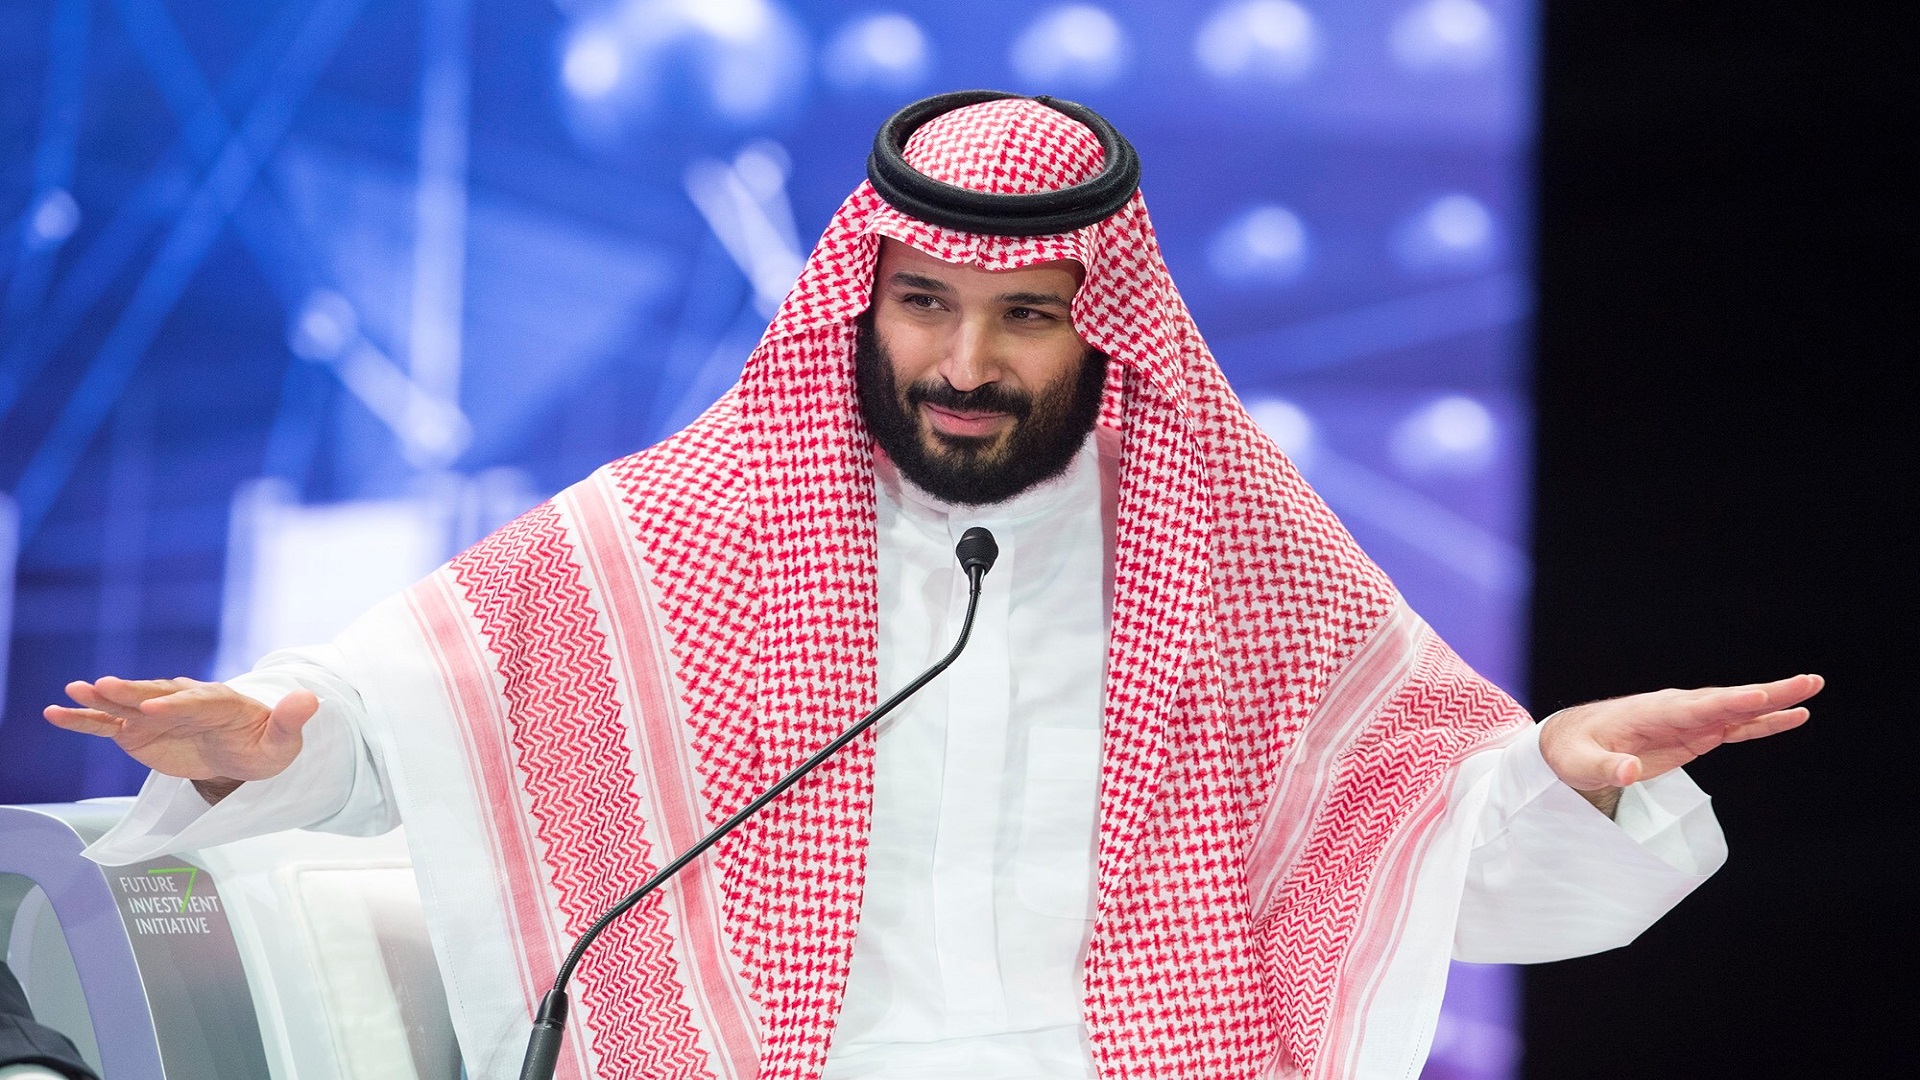 المستثمرون السعوديون فقدوا ثقتهم ببقاء ابن سلمان فقرروا